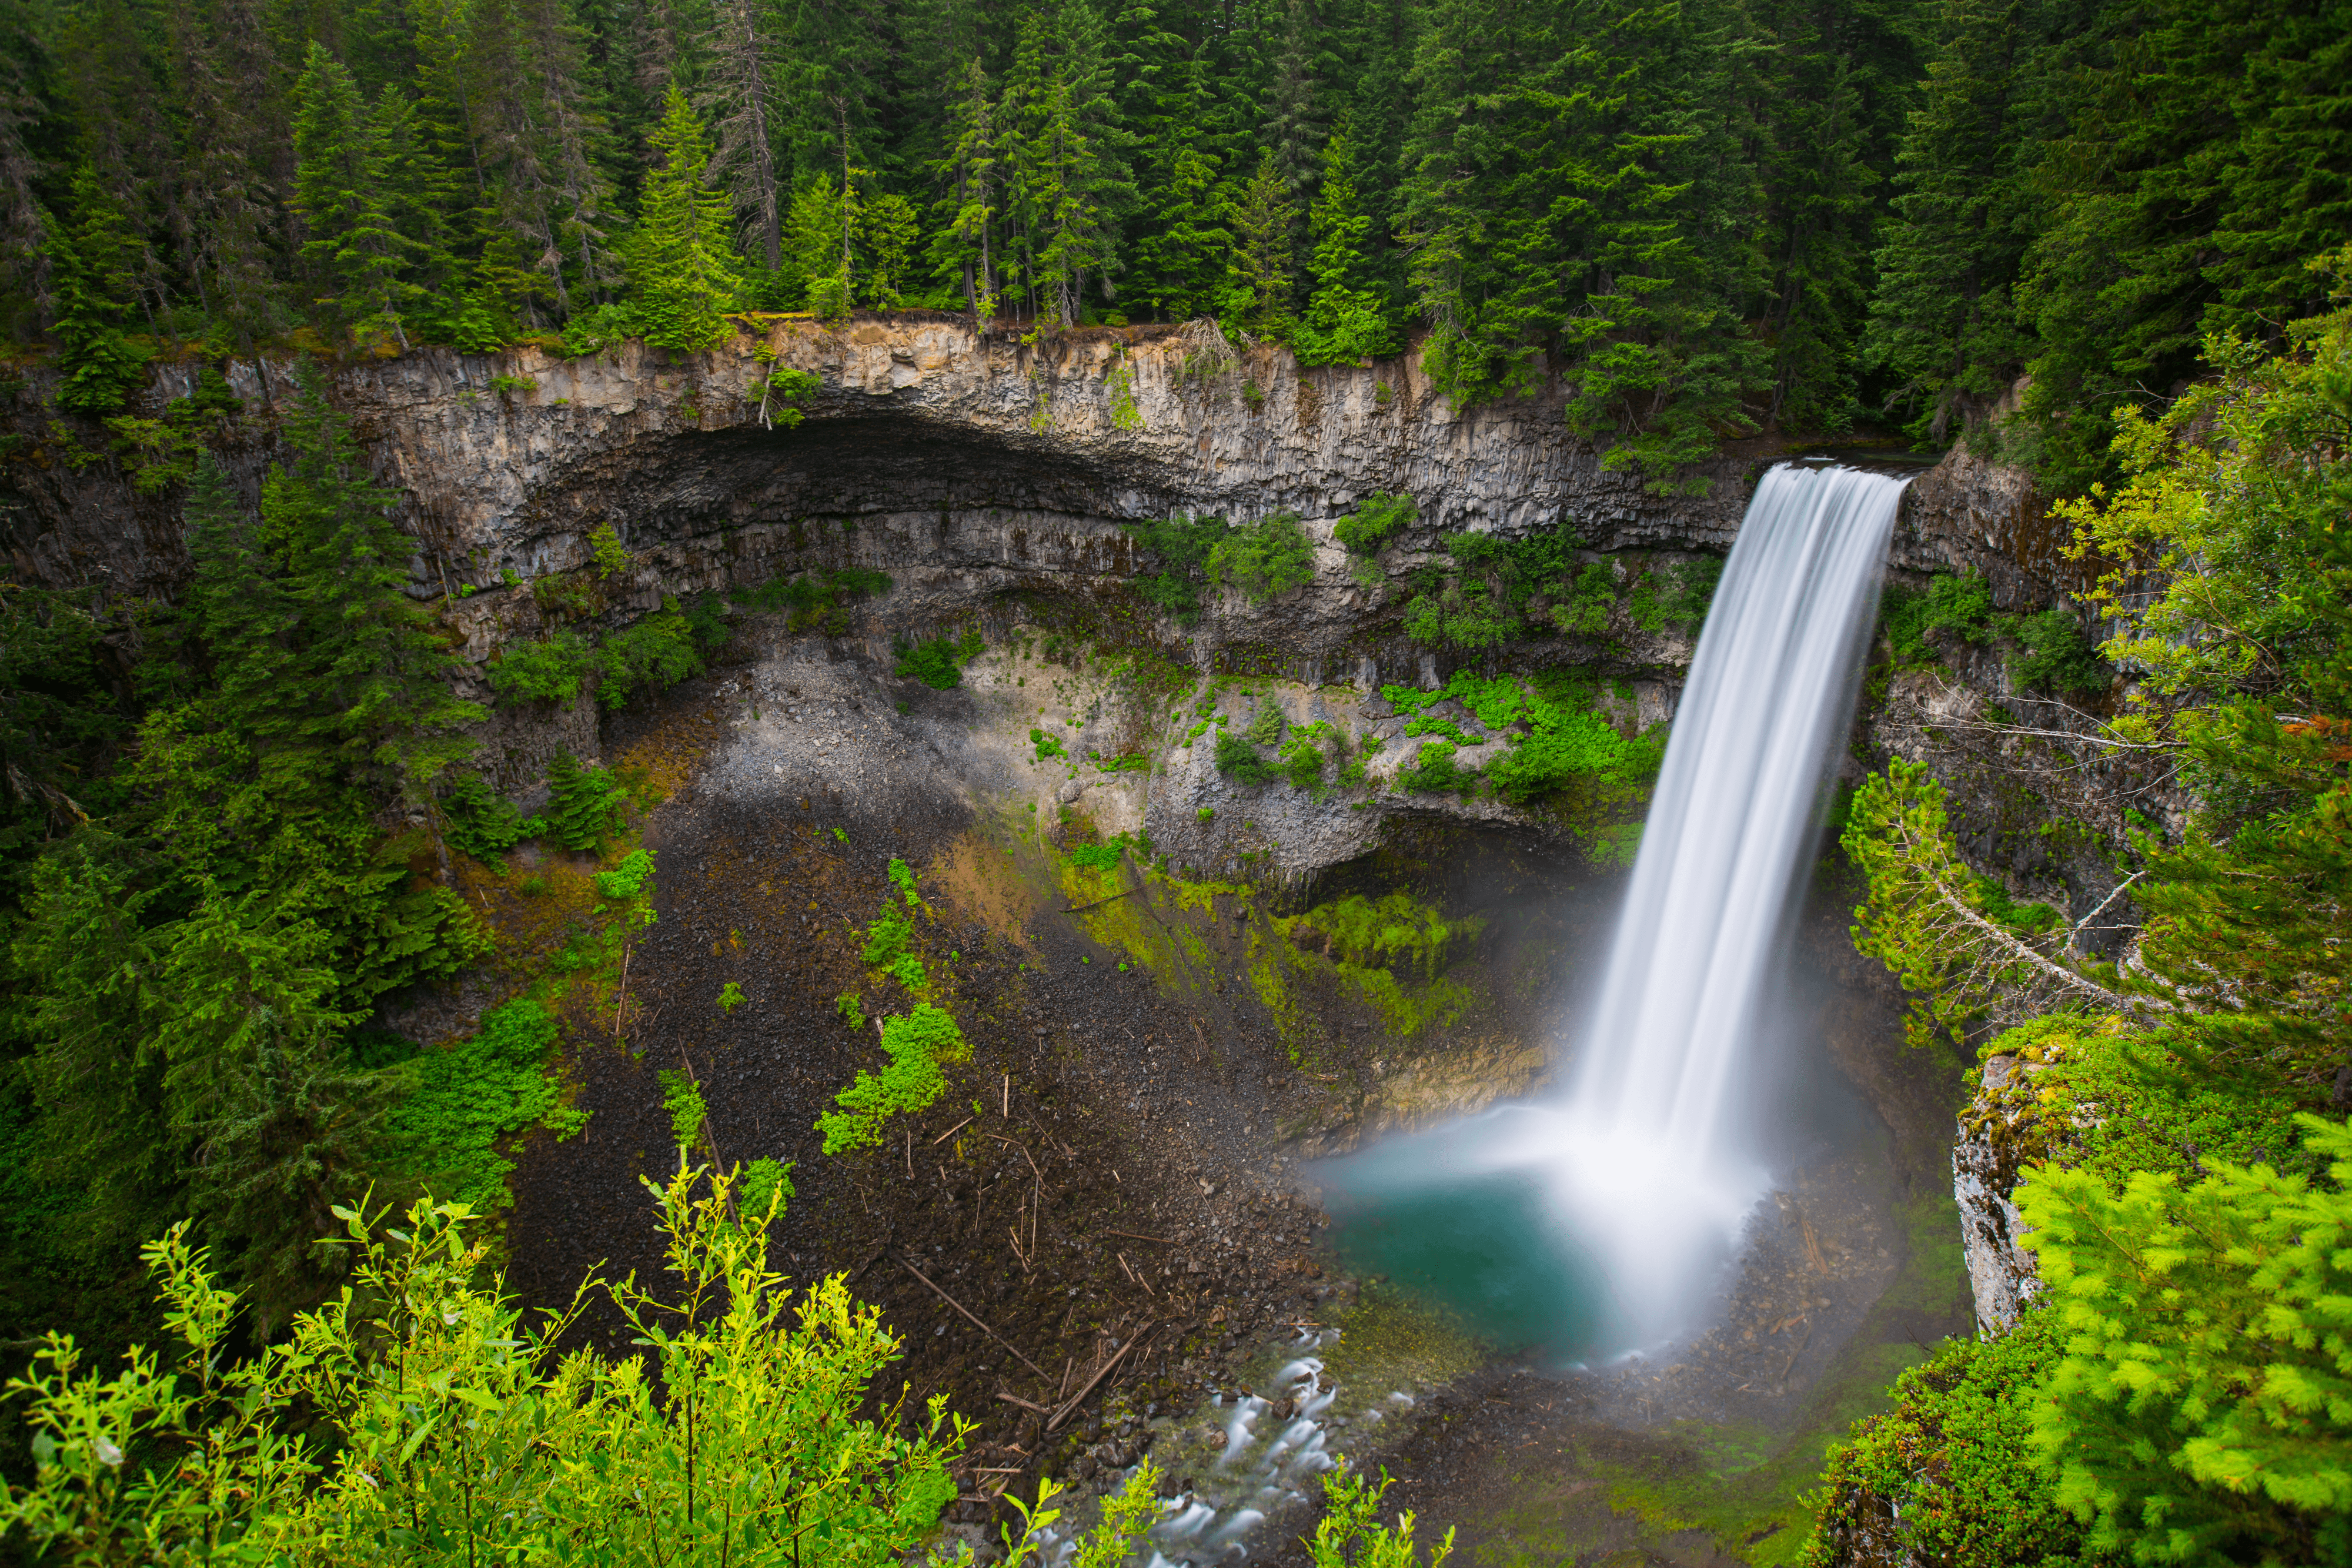 Stunning waterfall within green surroundings